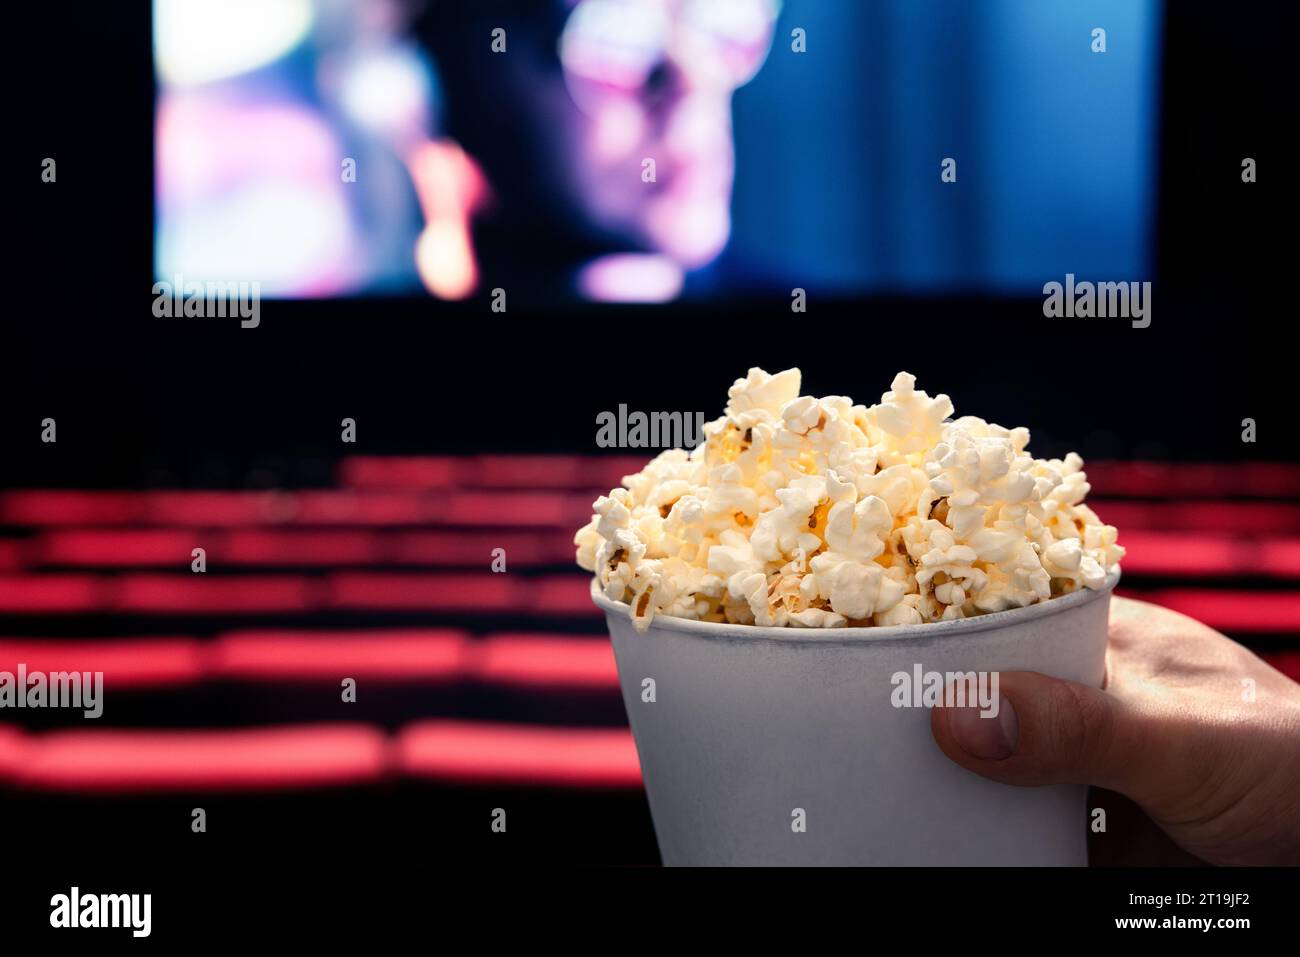 Film e popcorn. Uomo che tiene una scatola di pop corn al cinema. Azione, thriller o intrattenimento scifi sullo schermo. Posti a sedere rossi in teatro scuro. Spuntino salato. Foto Stock